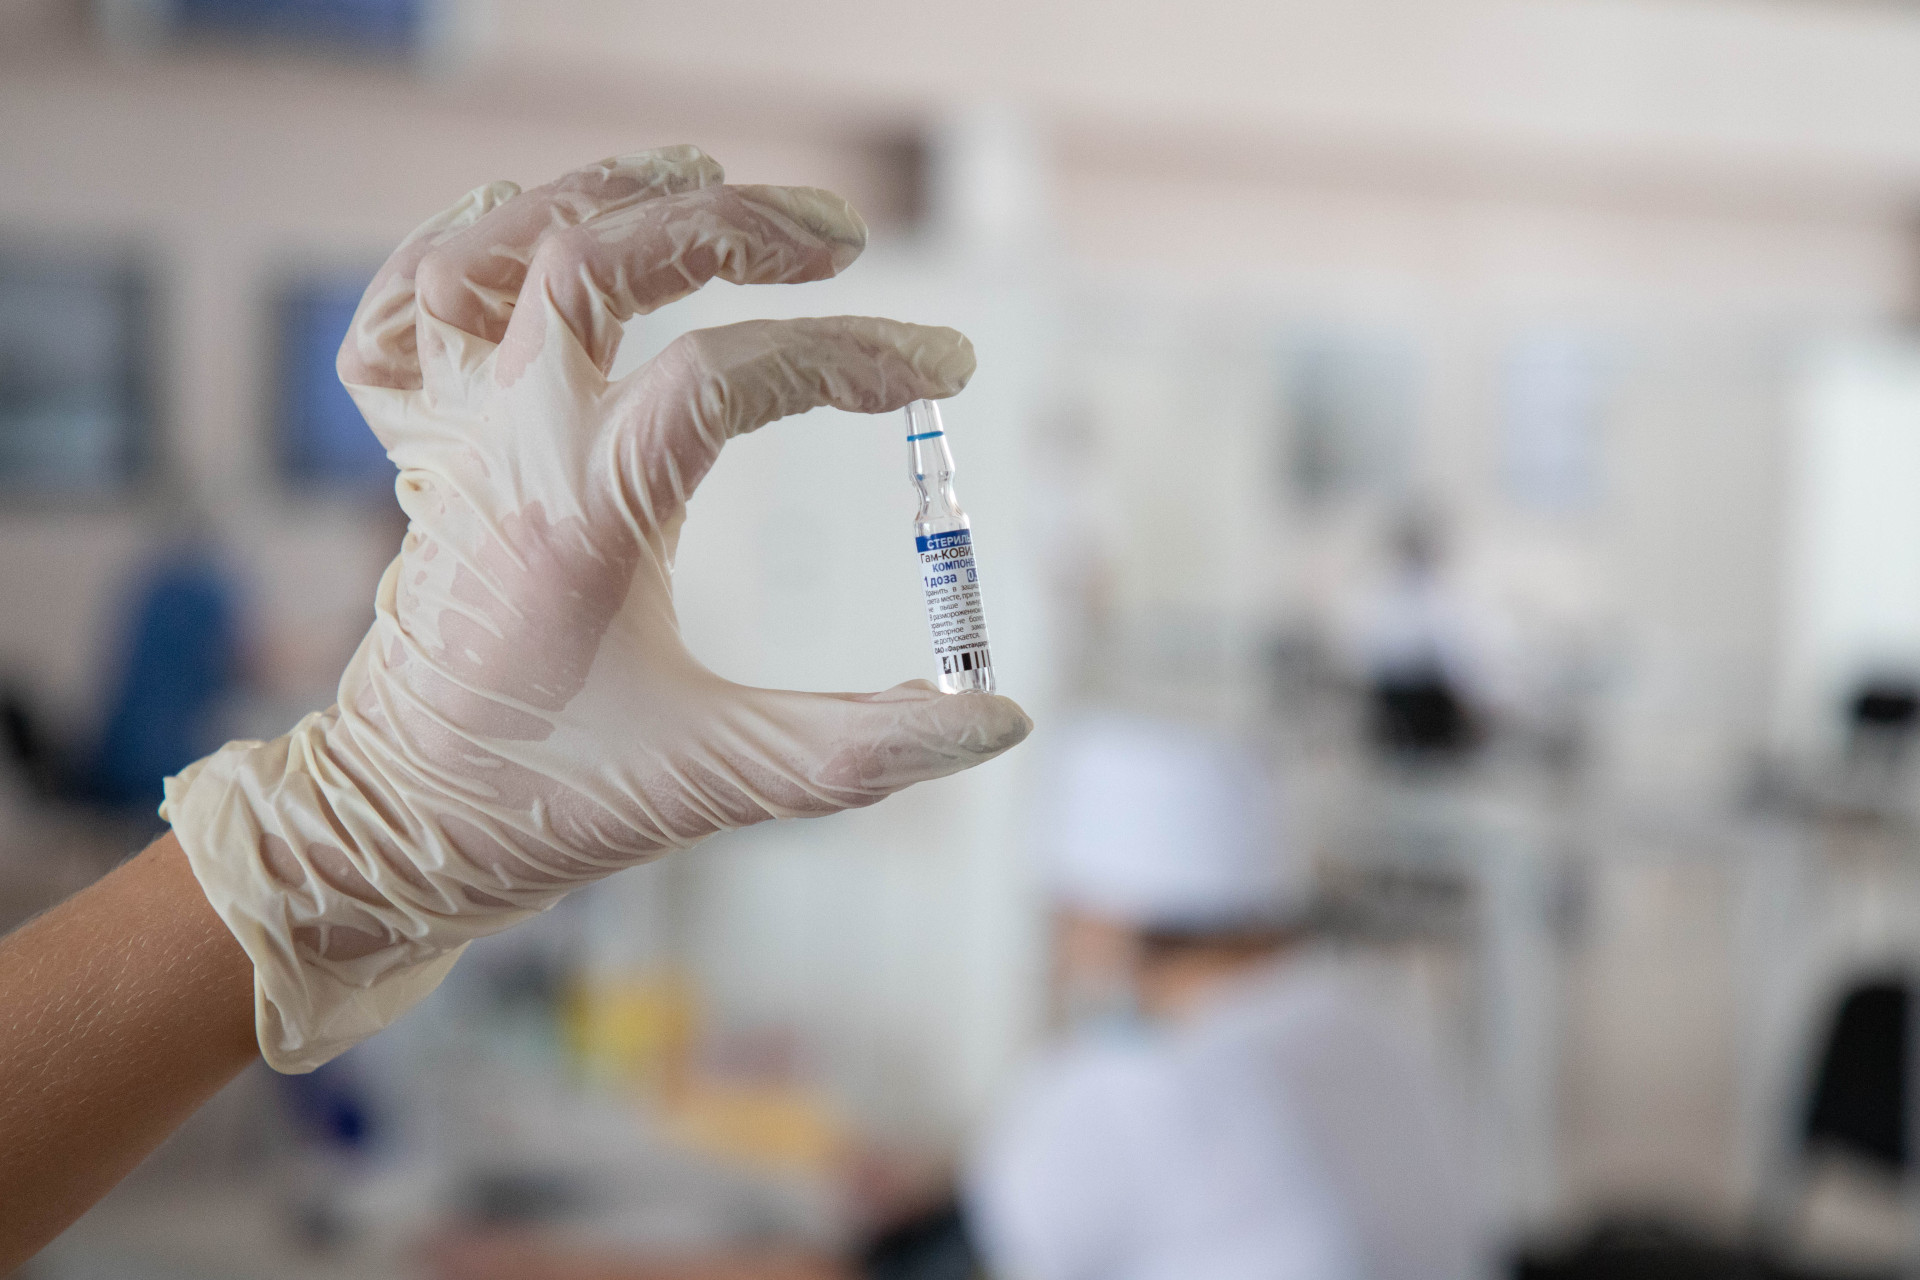 Назальная вакцина от коронавируса поступит в Тульскую область в ближайшее время - Минздрав РФ